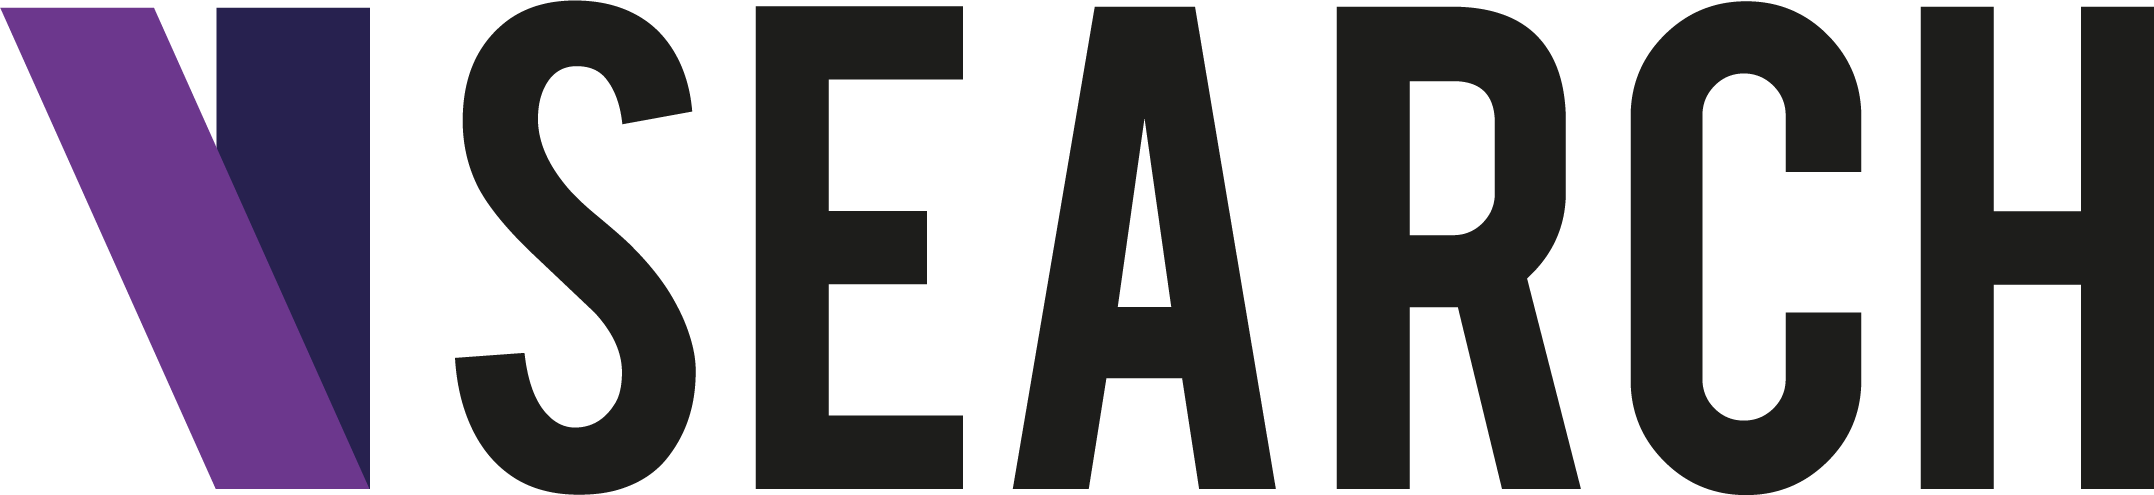 VSearch Logo